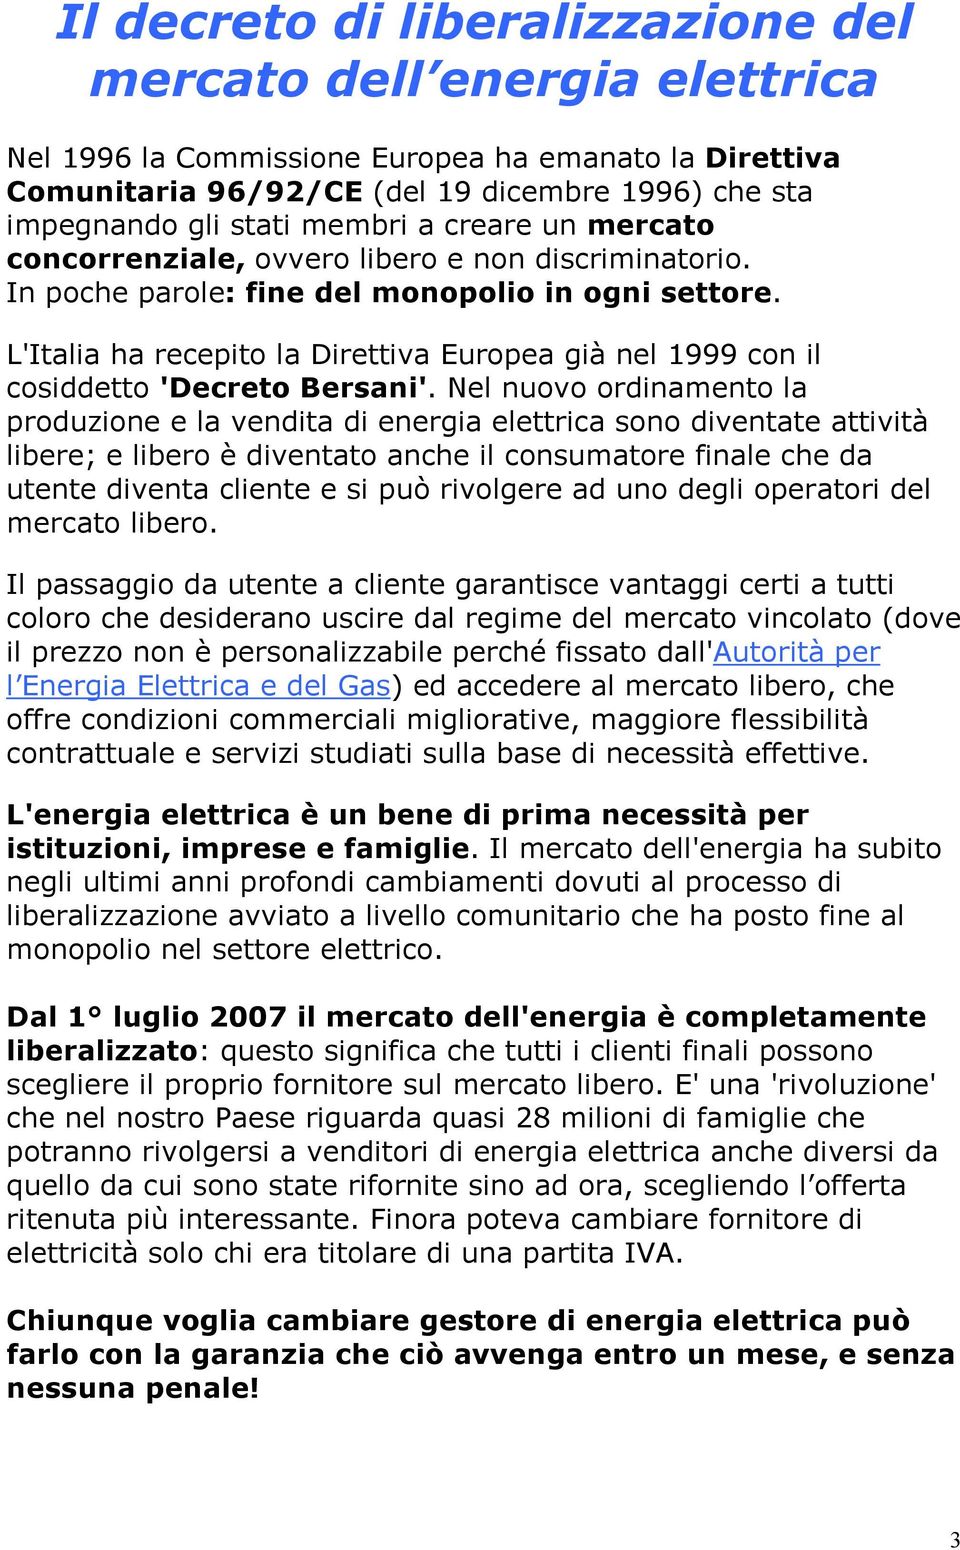 L'Italia ha recepito la Direttiva Europea già nel 1999 con il cosiddetto 'Decreto Bersani'.